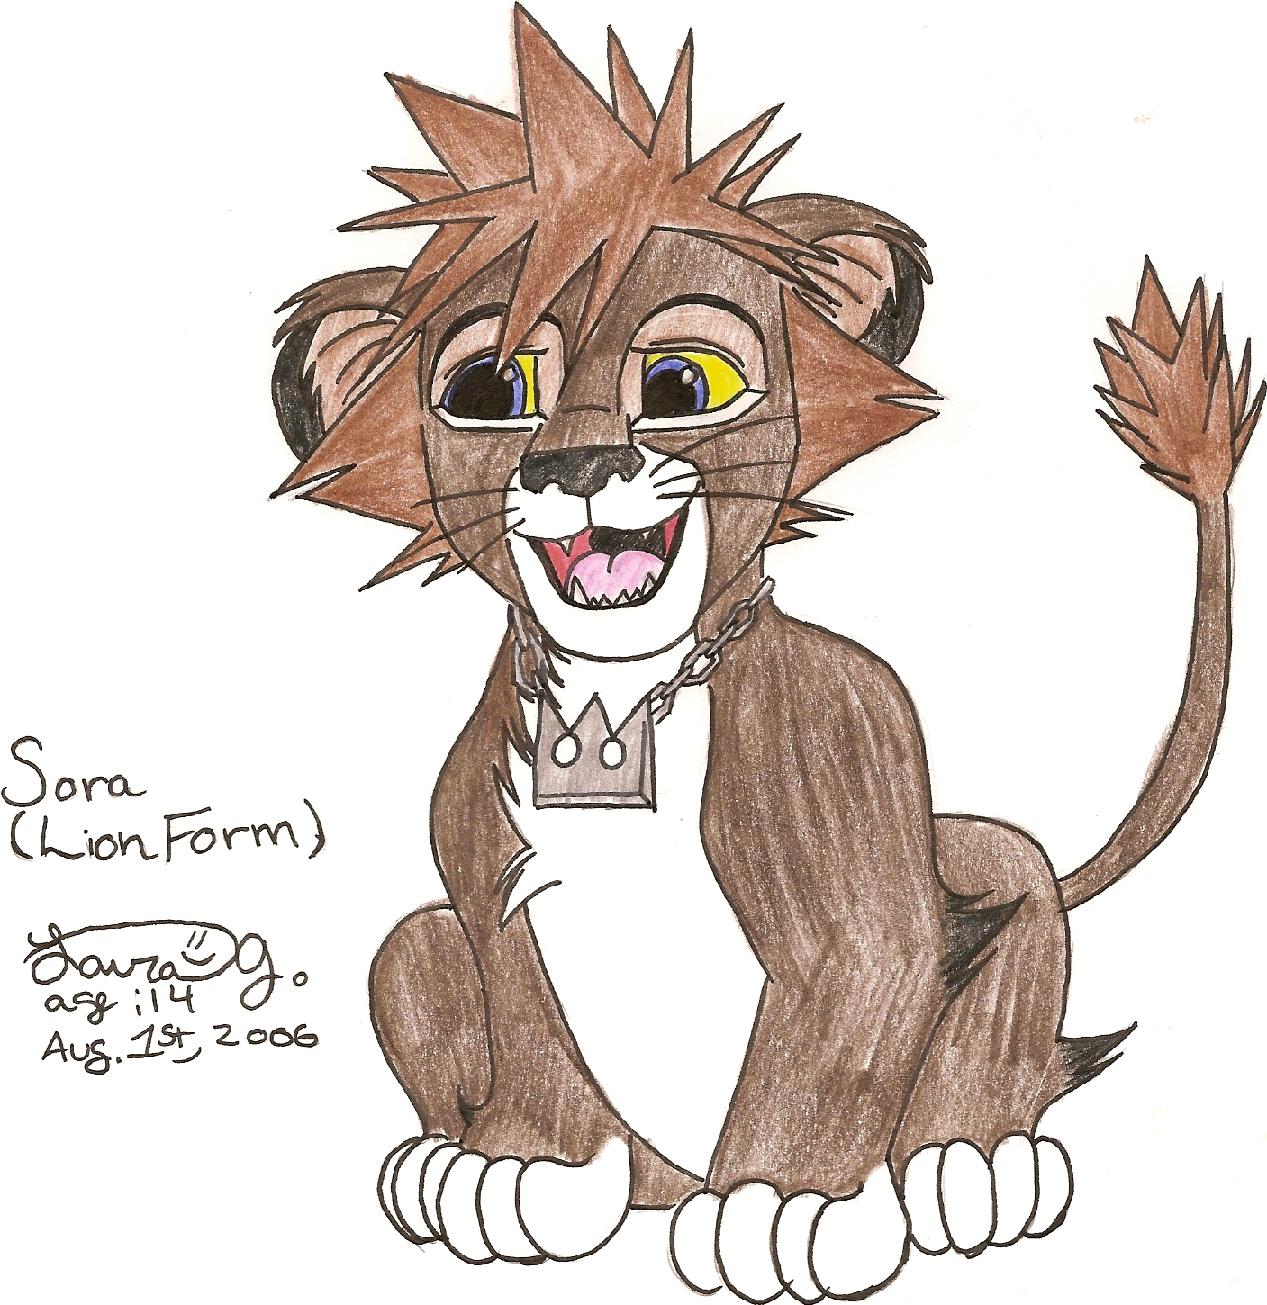 Sora(lion form) by kittysan5